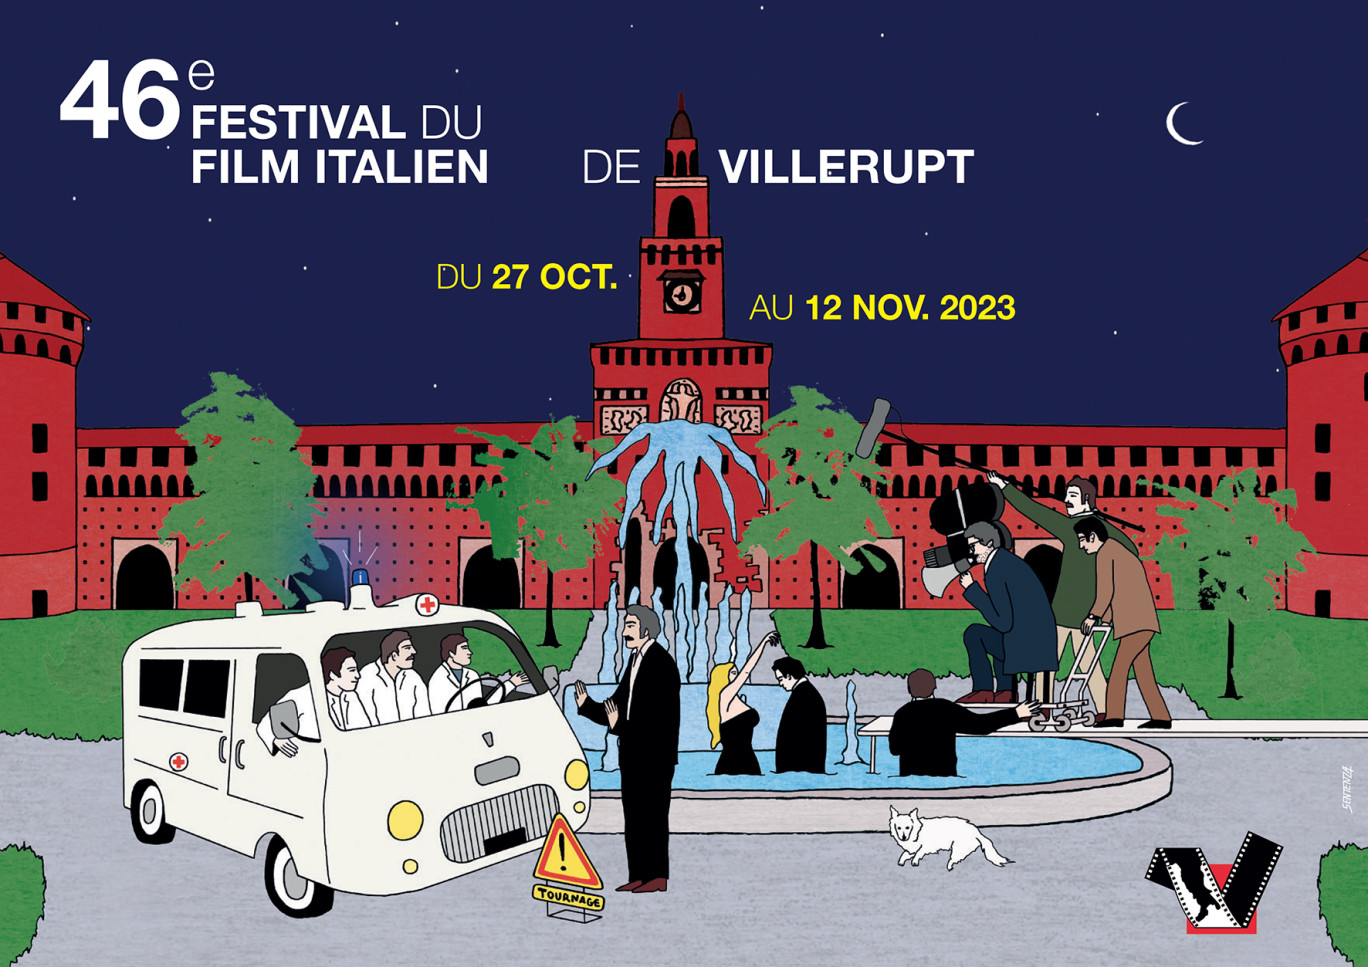 Le 46e festival du film italien bat son plein à Villerupt